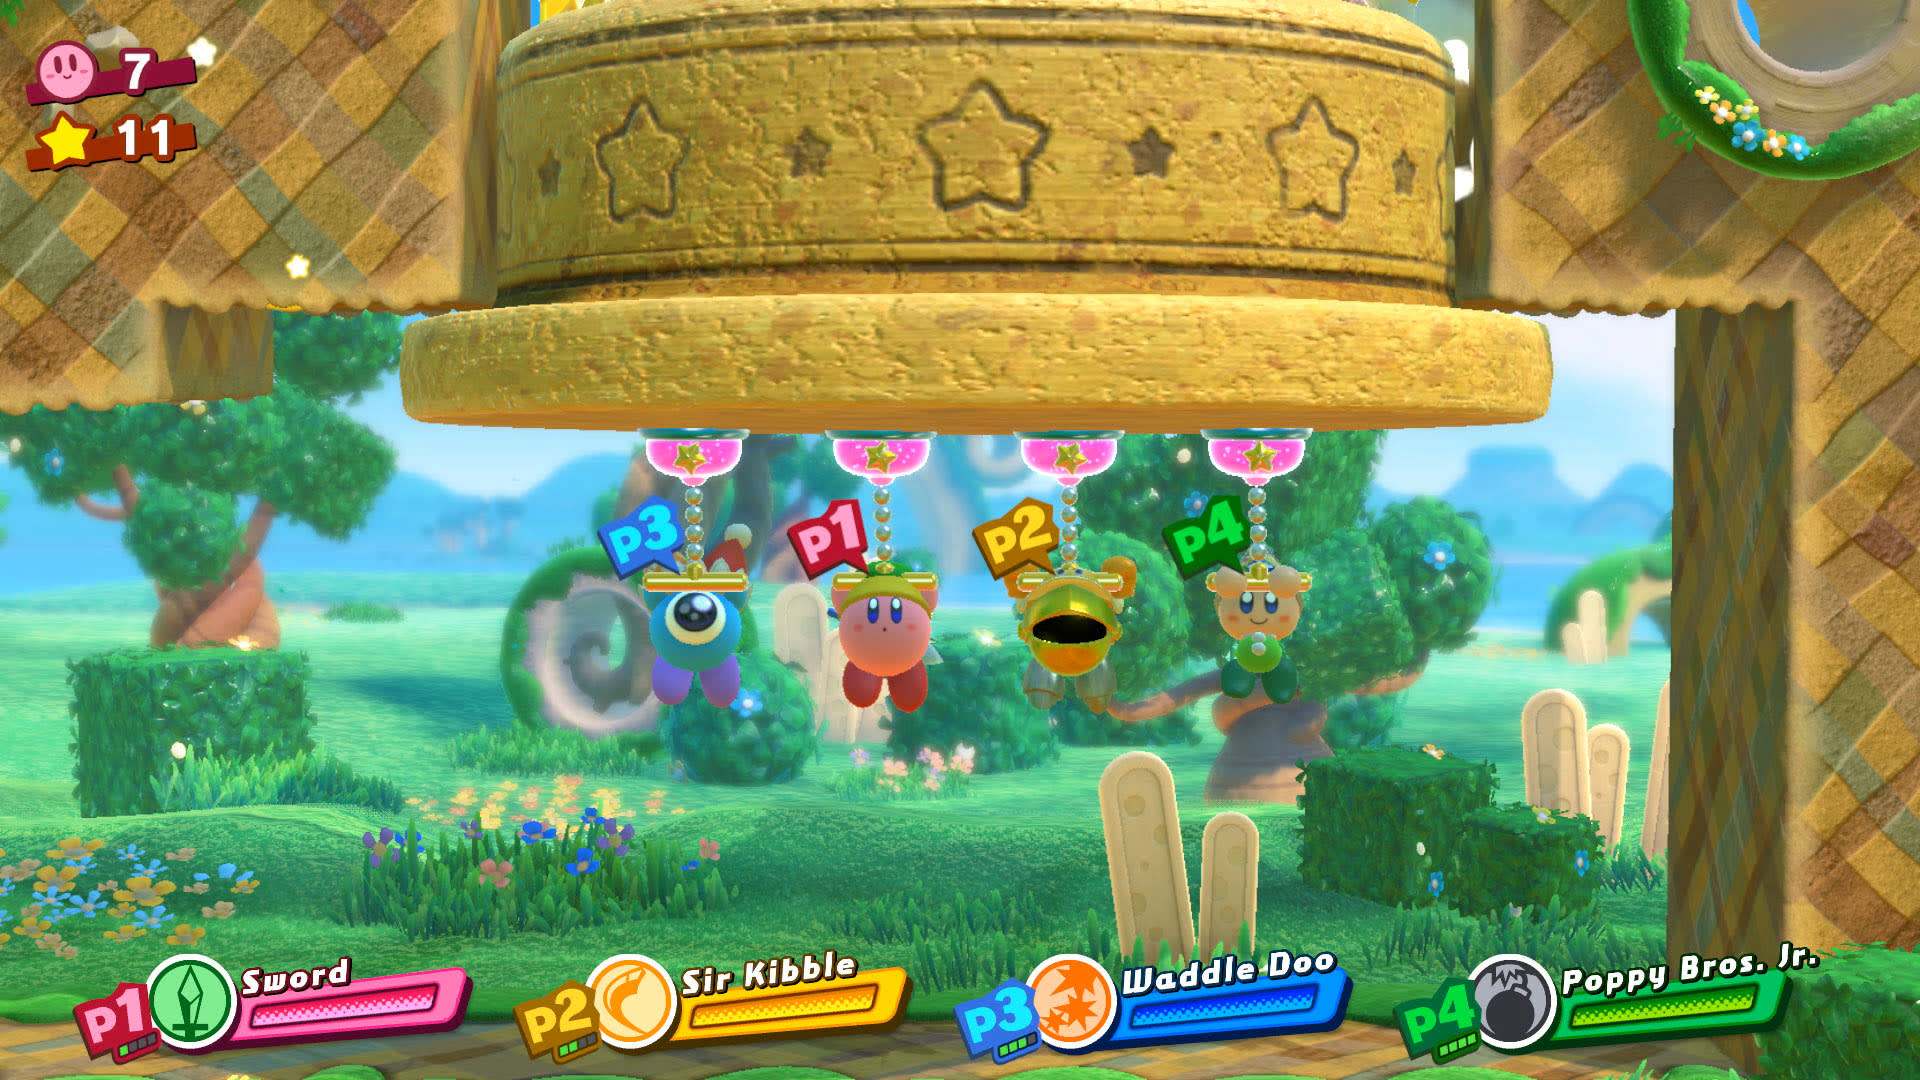 [Enhanced Kirby Star Allies] Share the joy IMG